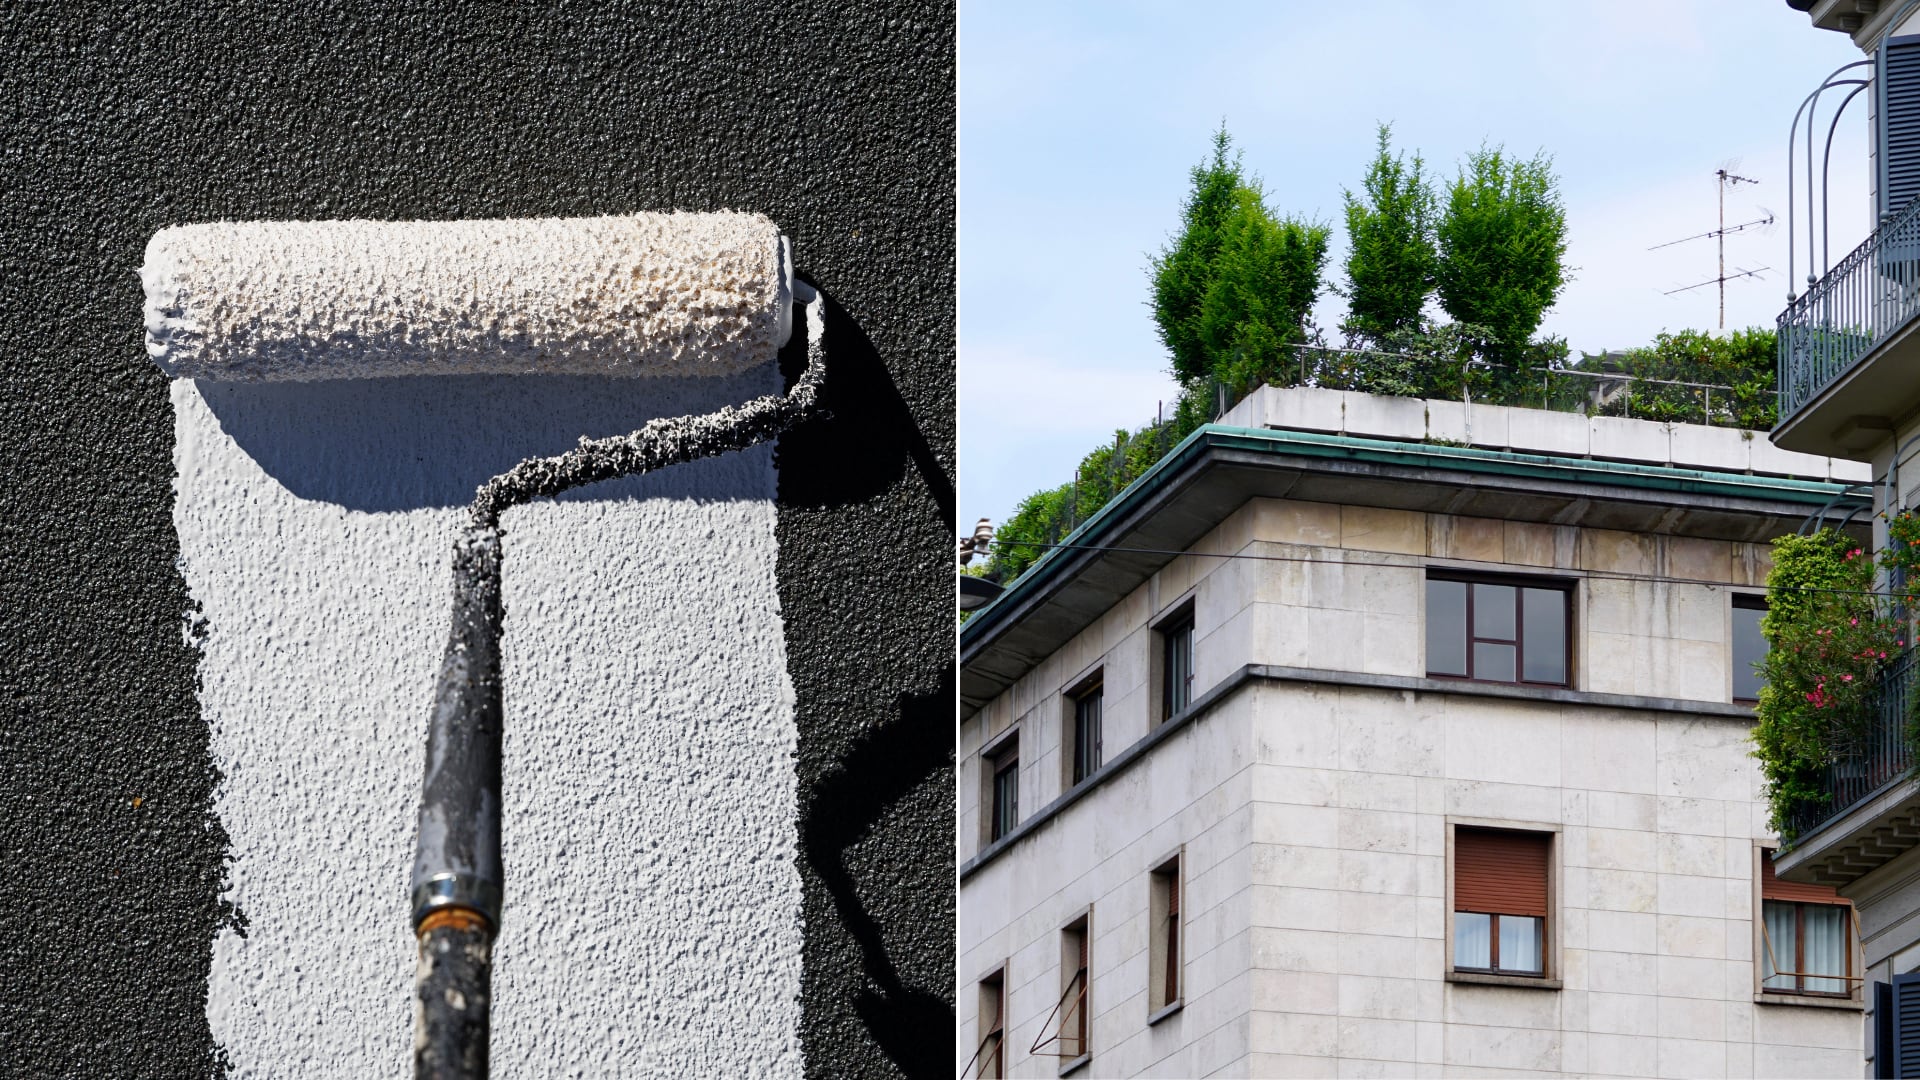 Pintar los tejados de blanco es la solución más eficaz para enfriar ciudades, superando a los techos verdes y paneles solares.